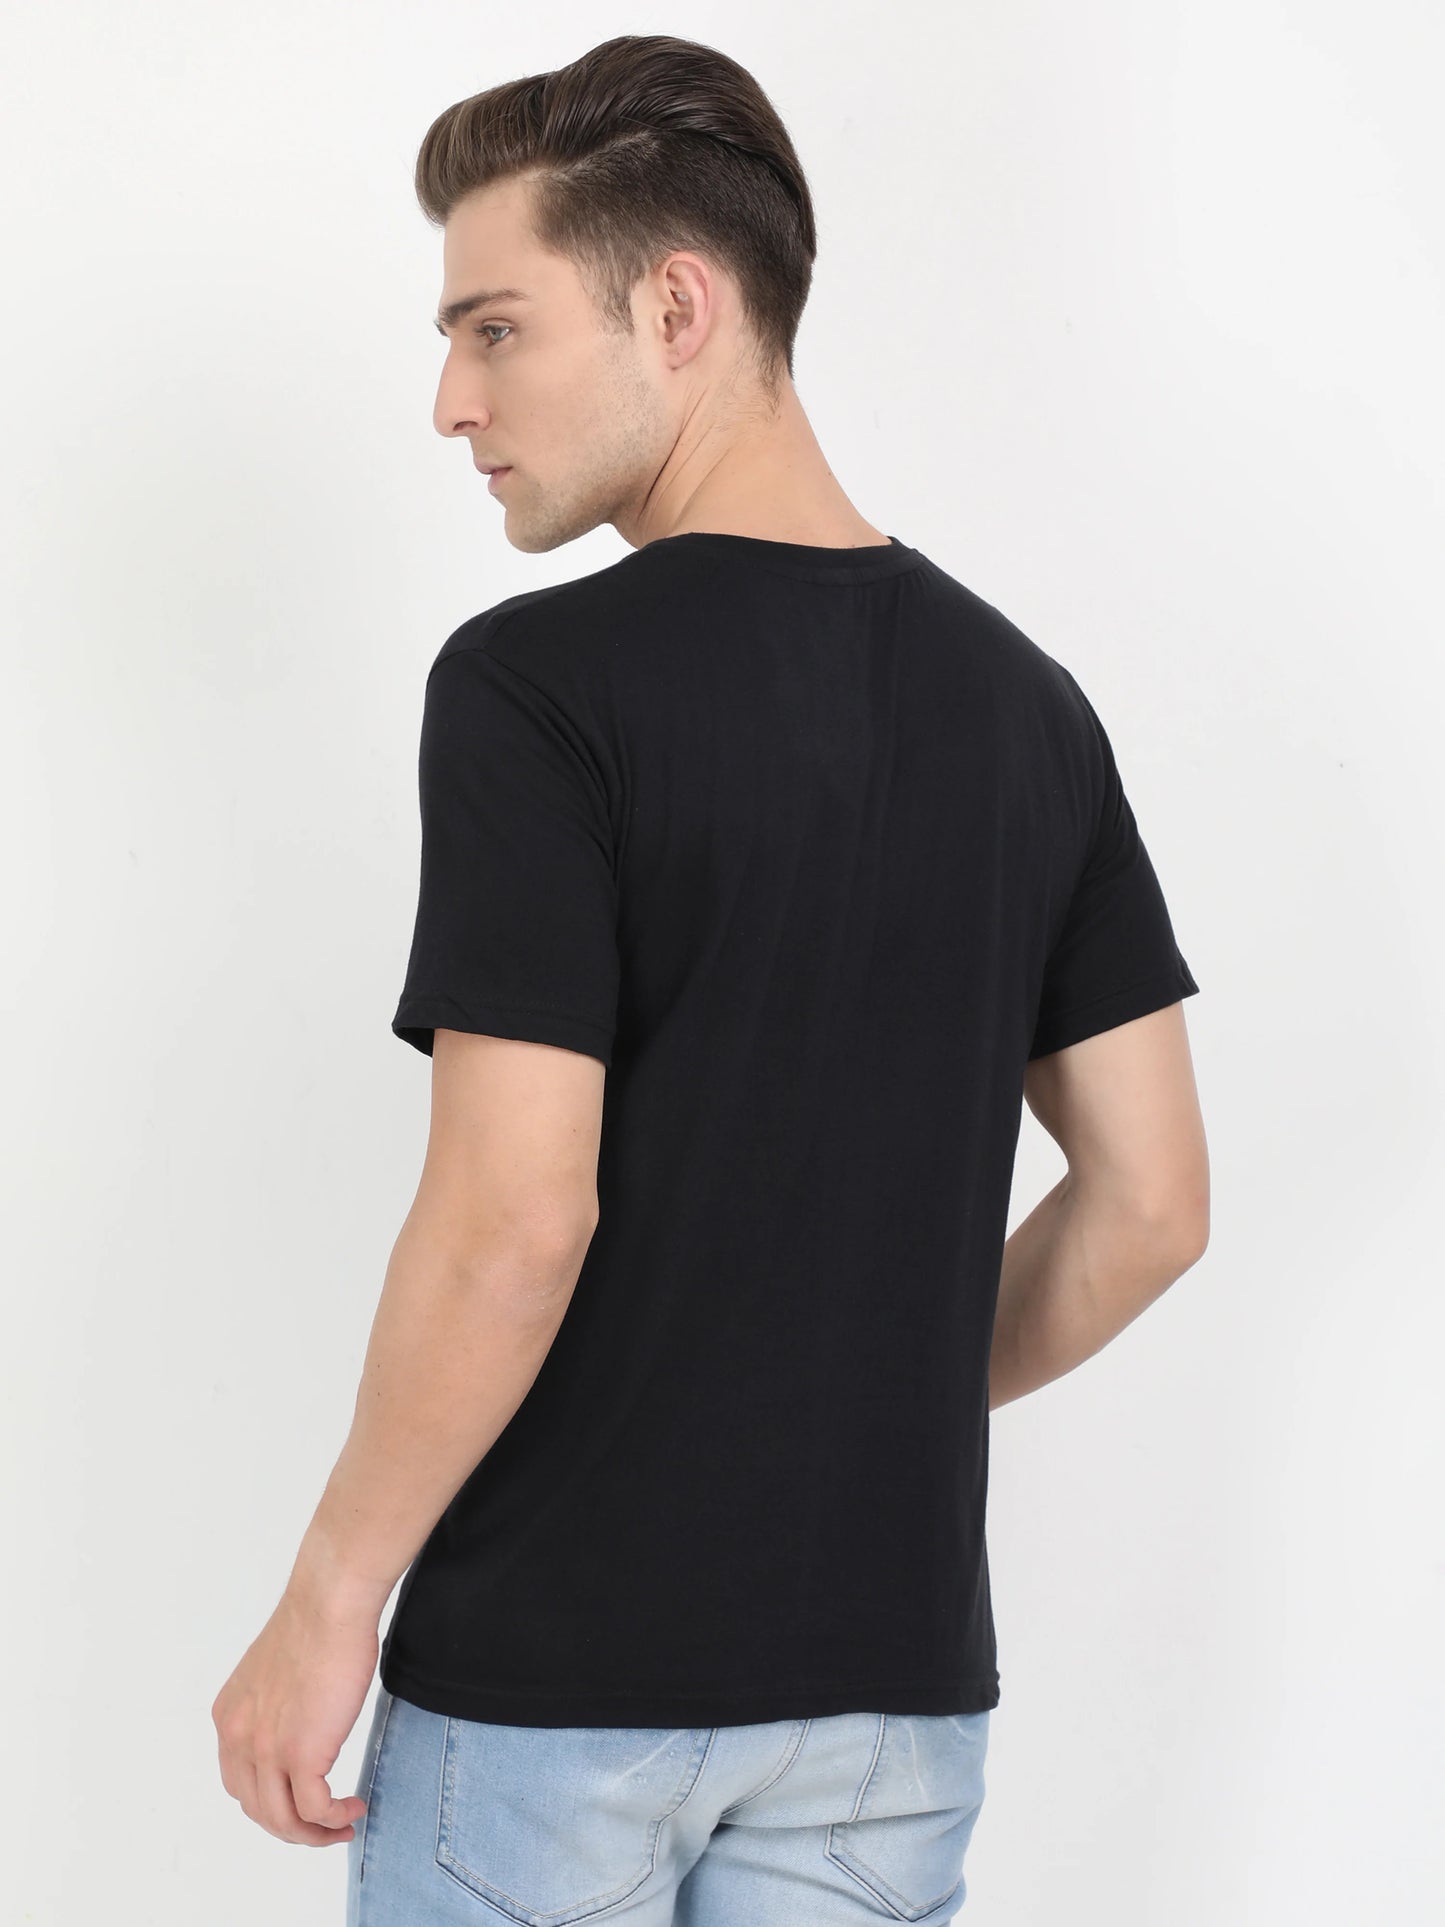 Men's Cotton Plain Round Neck Half Sleeve Black Color T-Shirt